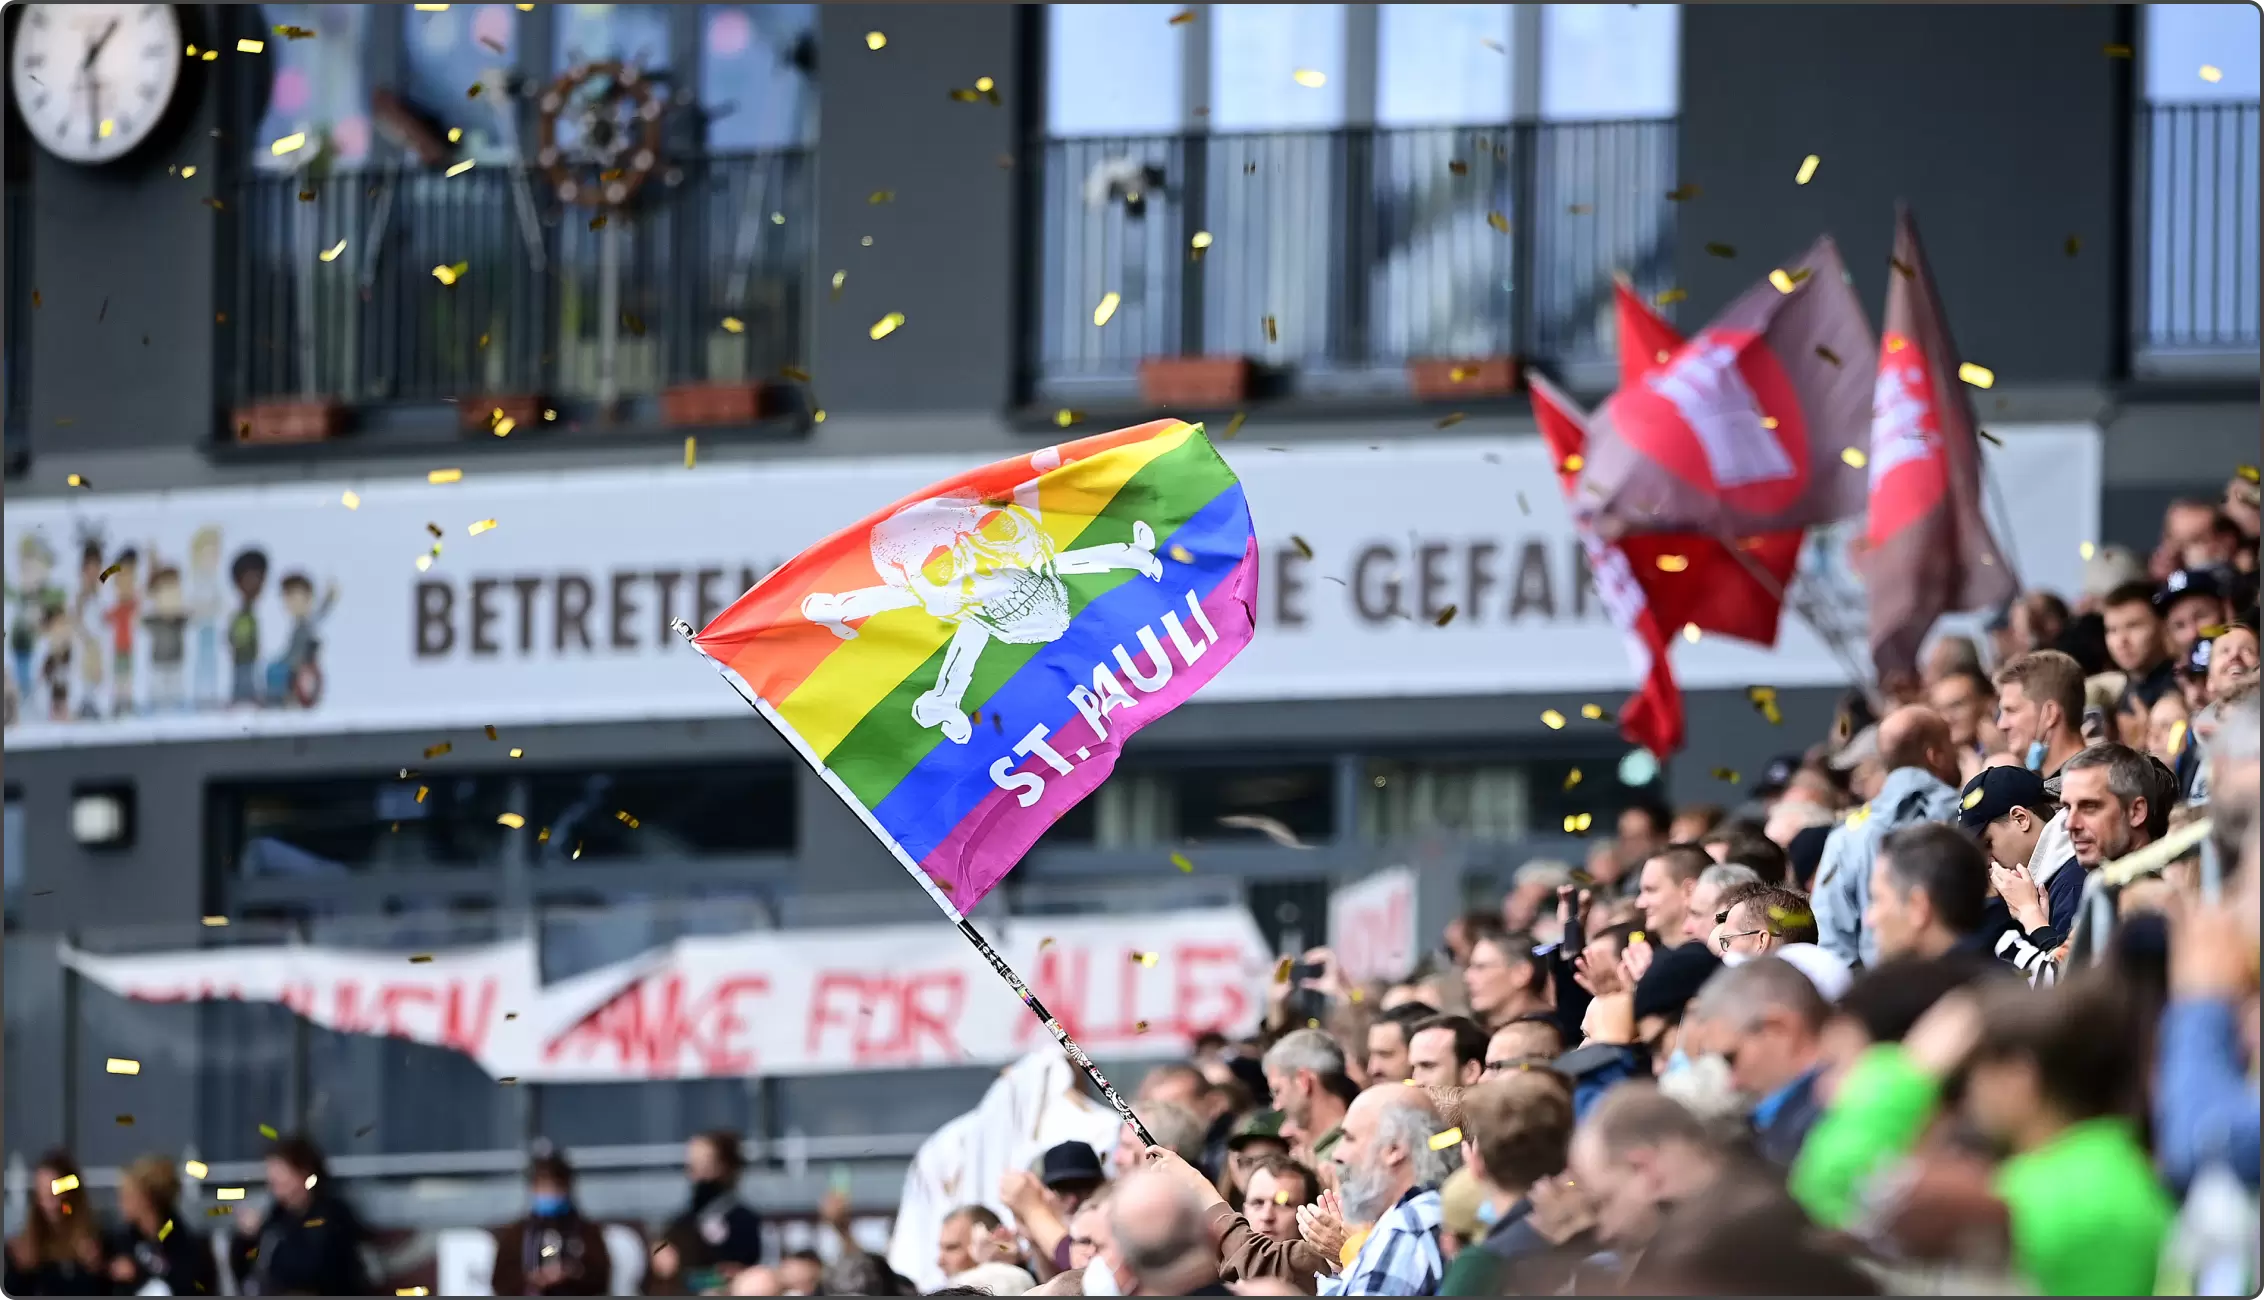 congstar und FC St. Pauli zeigen am Millerntor gemeinsam Haltung